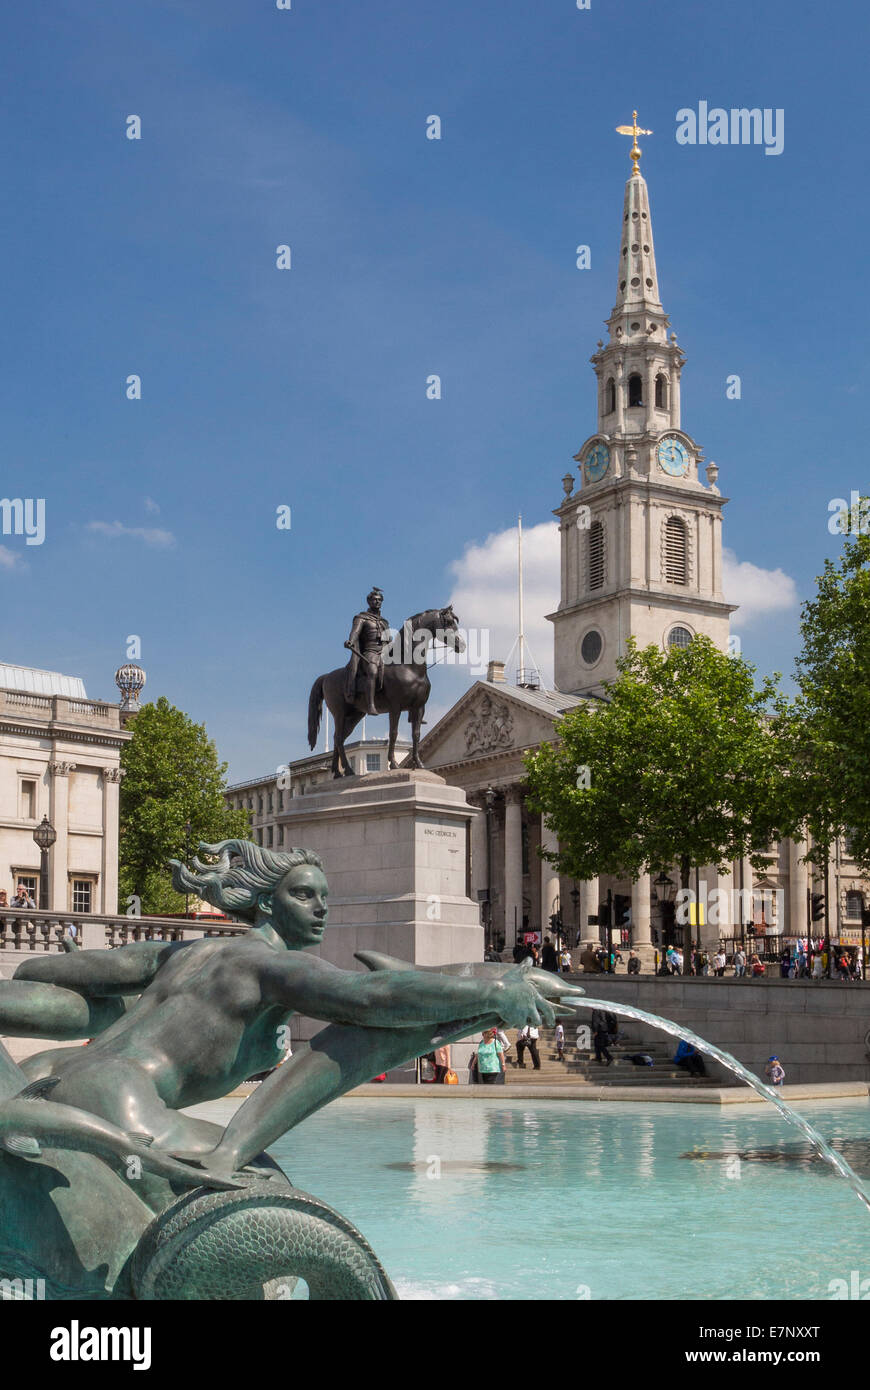 City, Londres, Angleterre, Square, Saint Martin, Trafalgar, UK, architecture, église, fontaine, cheval, monument, tourisme, Voyage Banque D'Images